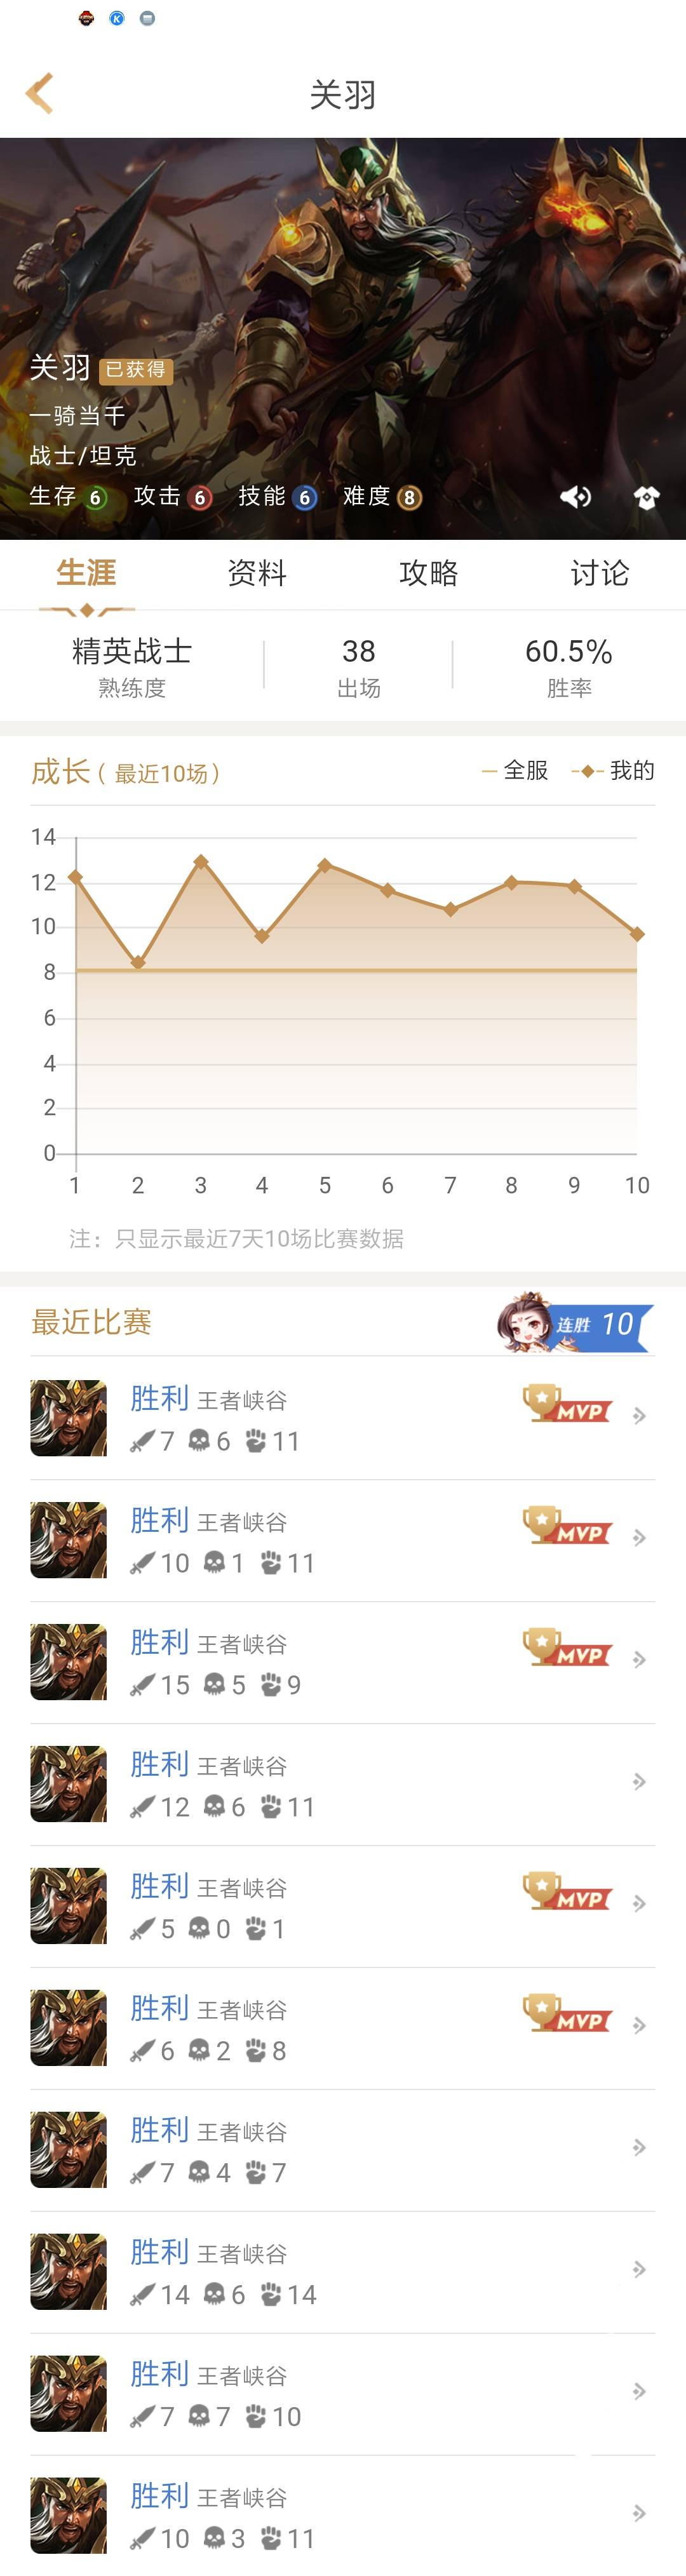 Screenshot_2018-01-04-19-09-09-217_com.tencent.gamehelper.smoba_compress.png